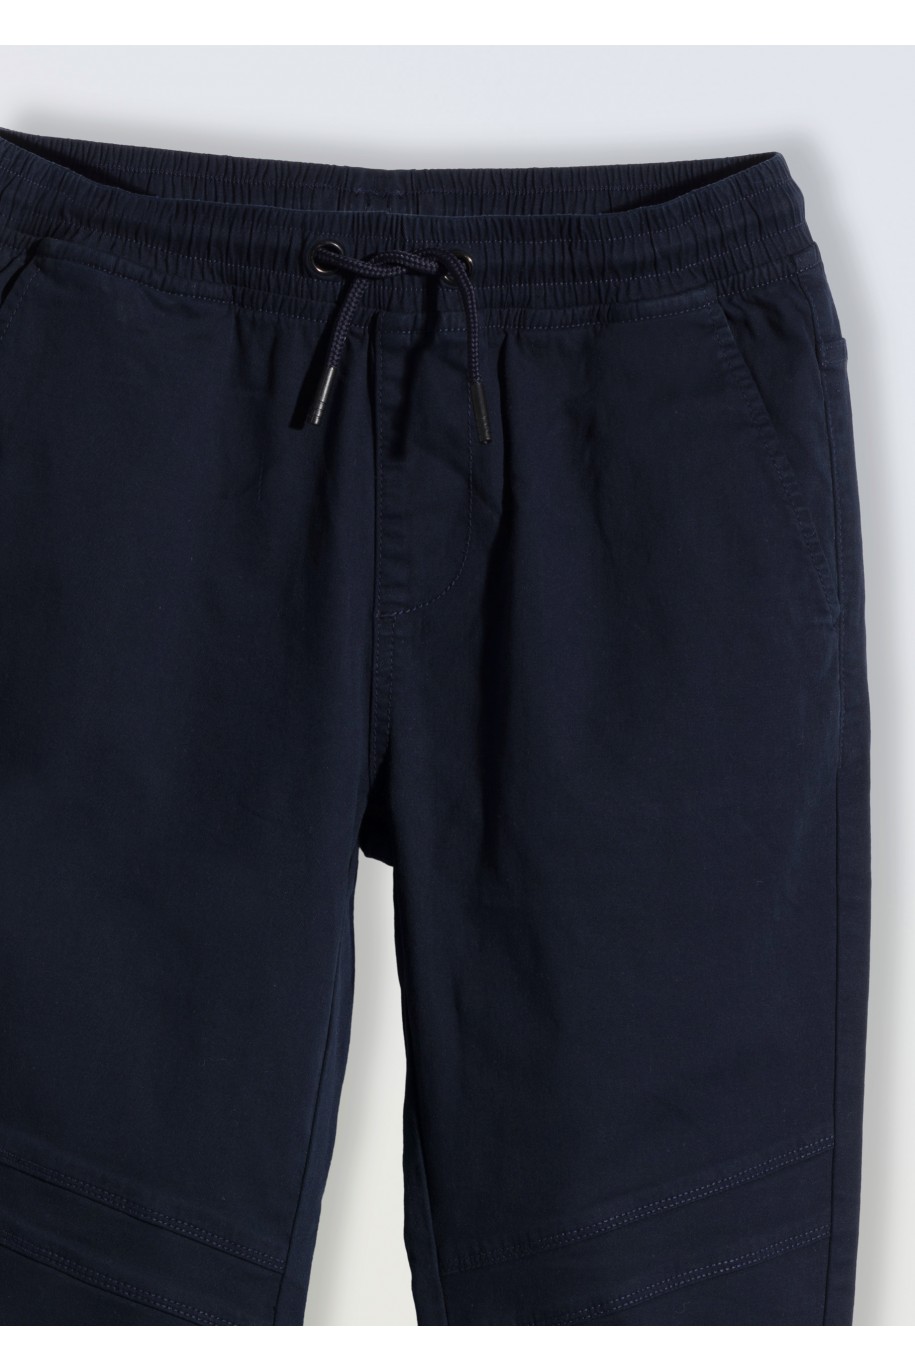 Granatowe spodnie typu joggery z modnymi przeszyciami - 46669